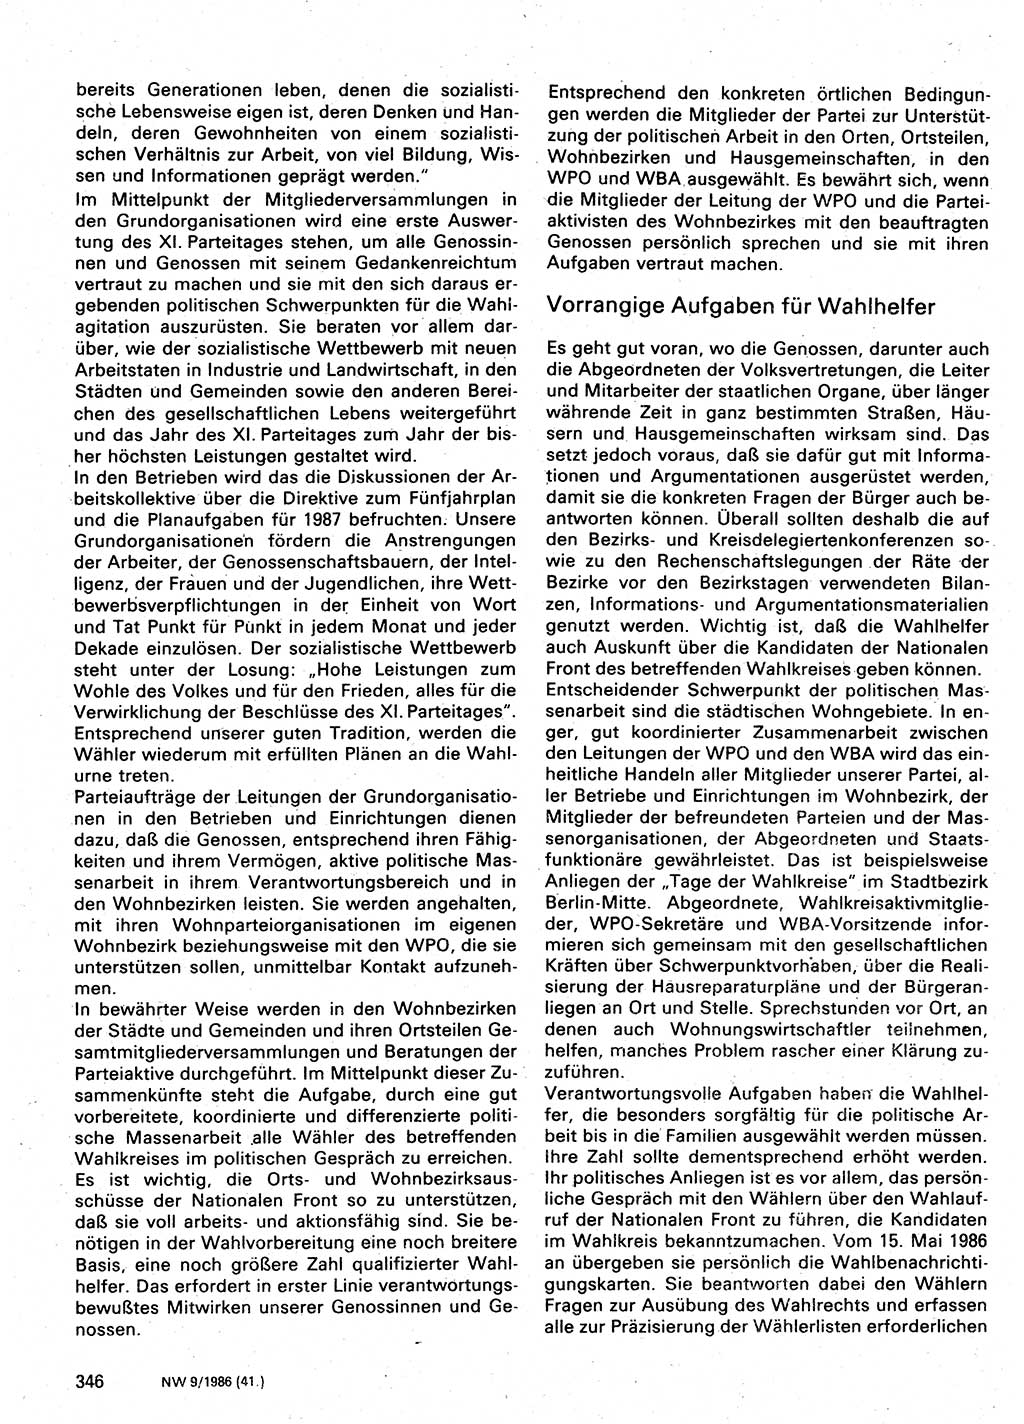 Neuer Weg (NW), Organ des Zentralkomitees (ZK) der SED (Sozialistische Einheitspartei Deutschlands) für Fragen des Parteilebens, 41. Jahrgang [Deutsche Demokratische Republik (DDR)] 1986, Seite 346 (NW ZK SED DDR 1986, S. 346)